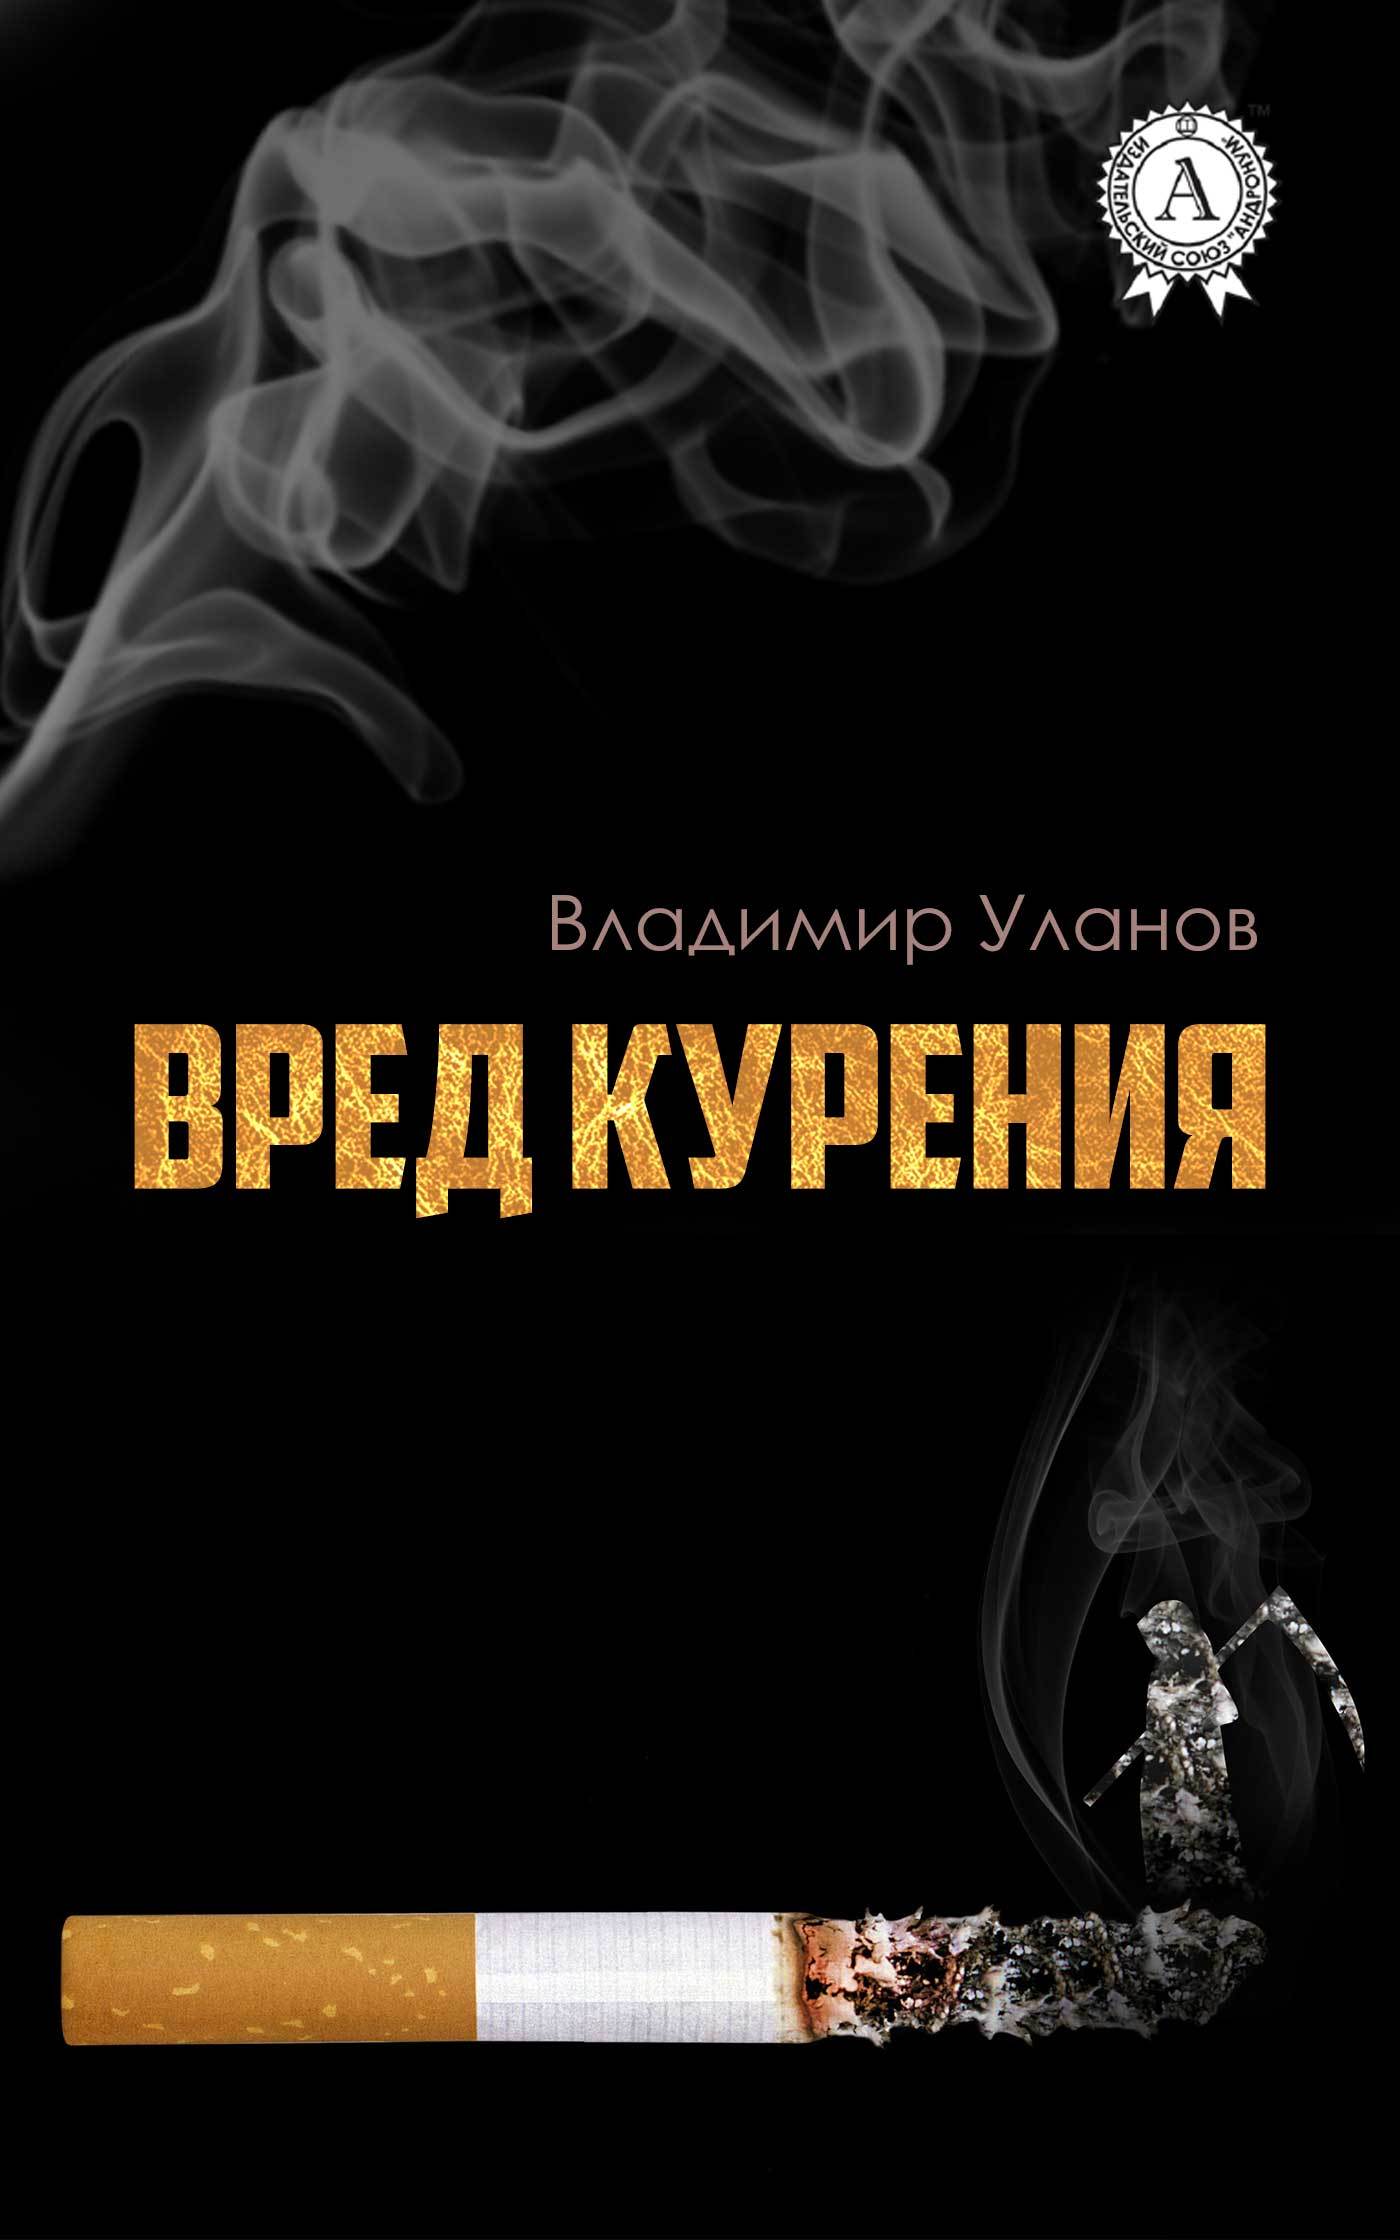 Книга Вред курения из серии , созданная Владимир Уланов, может относится к жанру Спорт, фитнес, Здоровье, Развлечения, Самосовершенствование. Стоимость электронной книги Вред курения с идентификатором 27051941 составляет 149.00 руб.